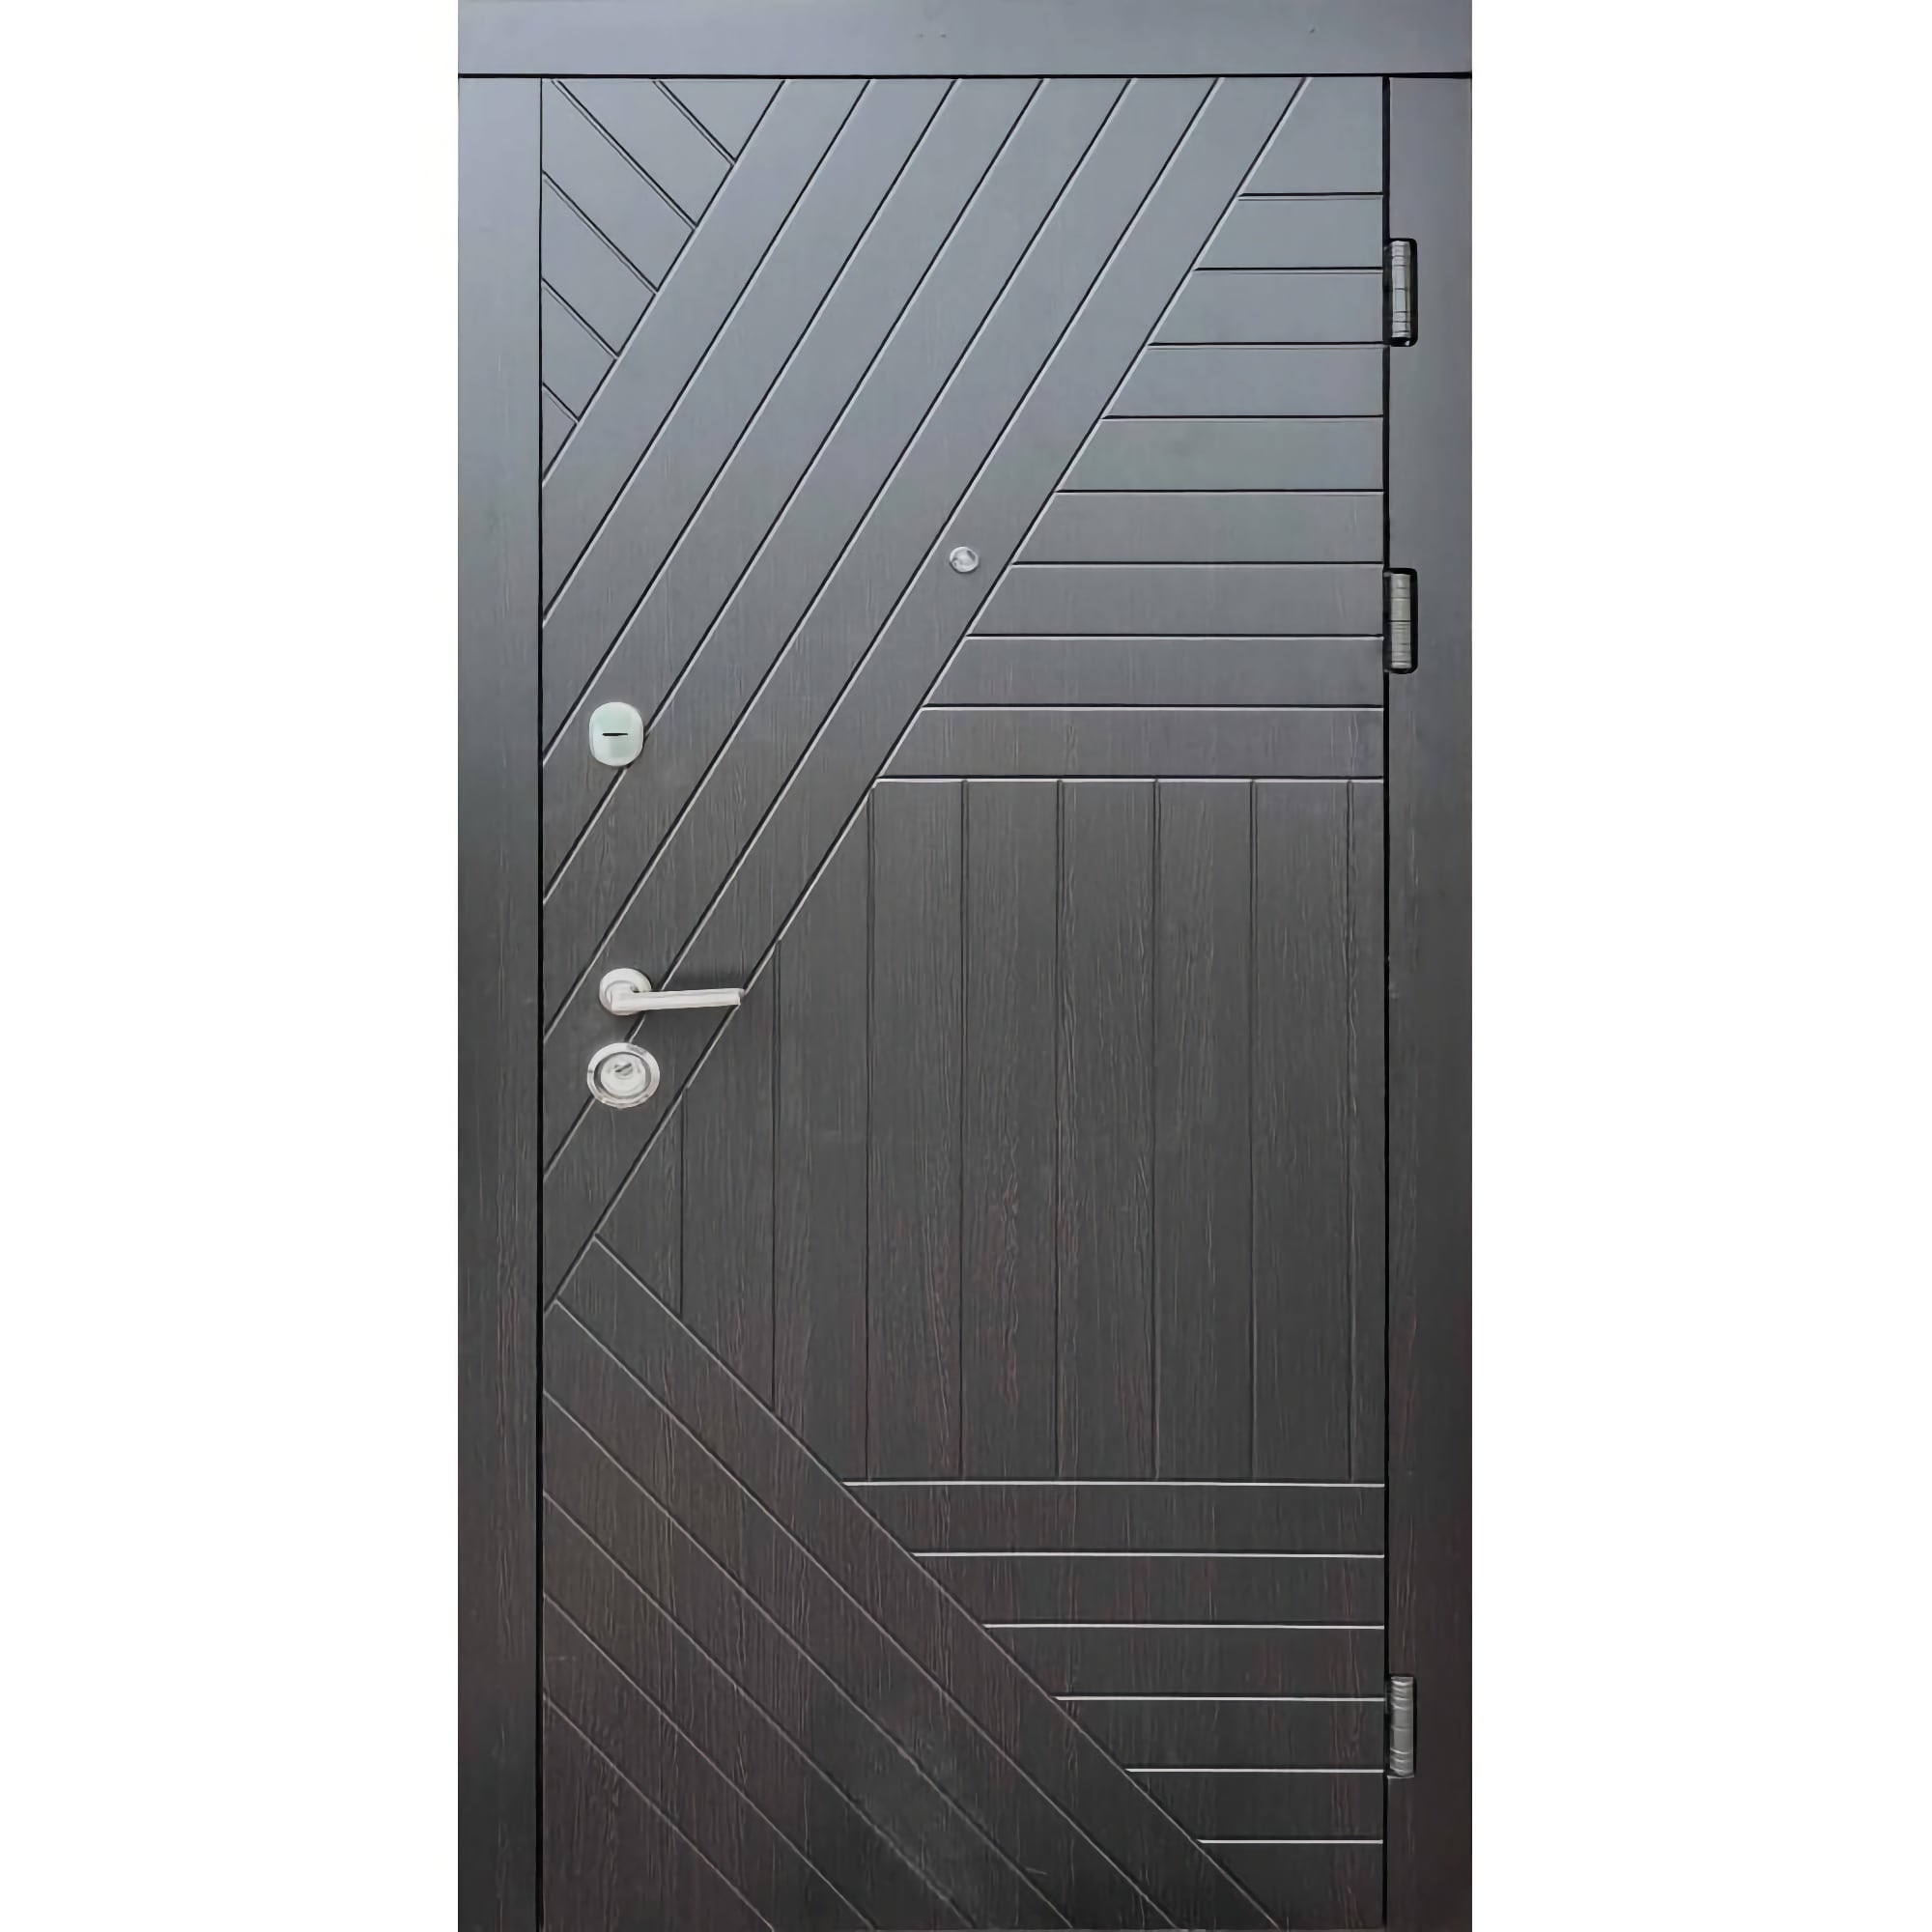 Двери входные бронированные с профессиональной установкой, под ключ - Стандарт плюс Легион 860